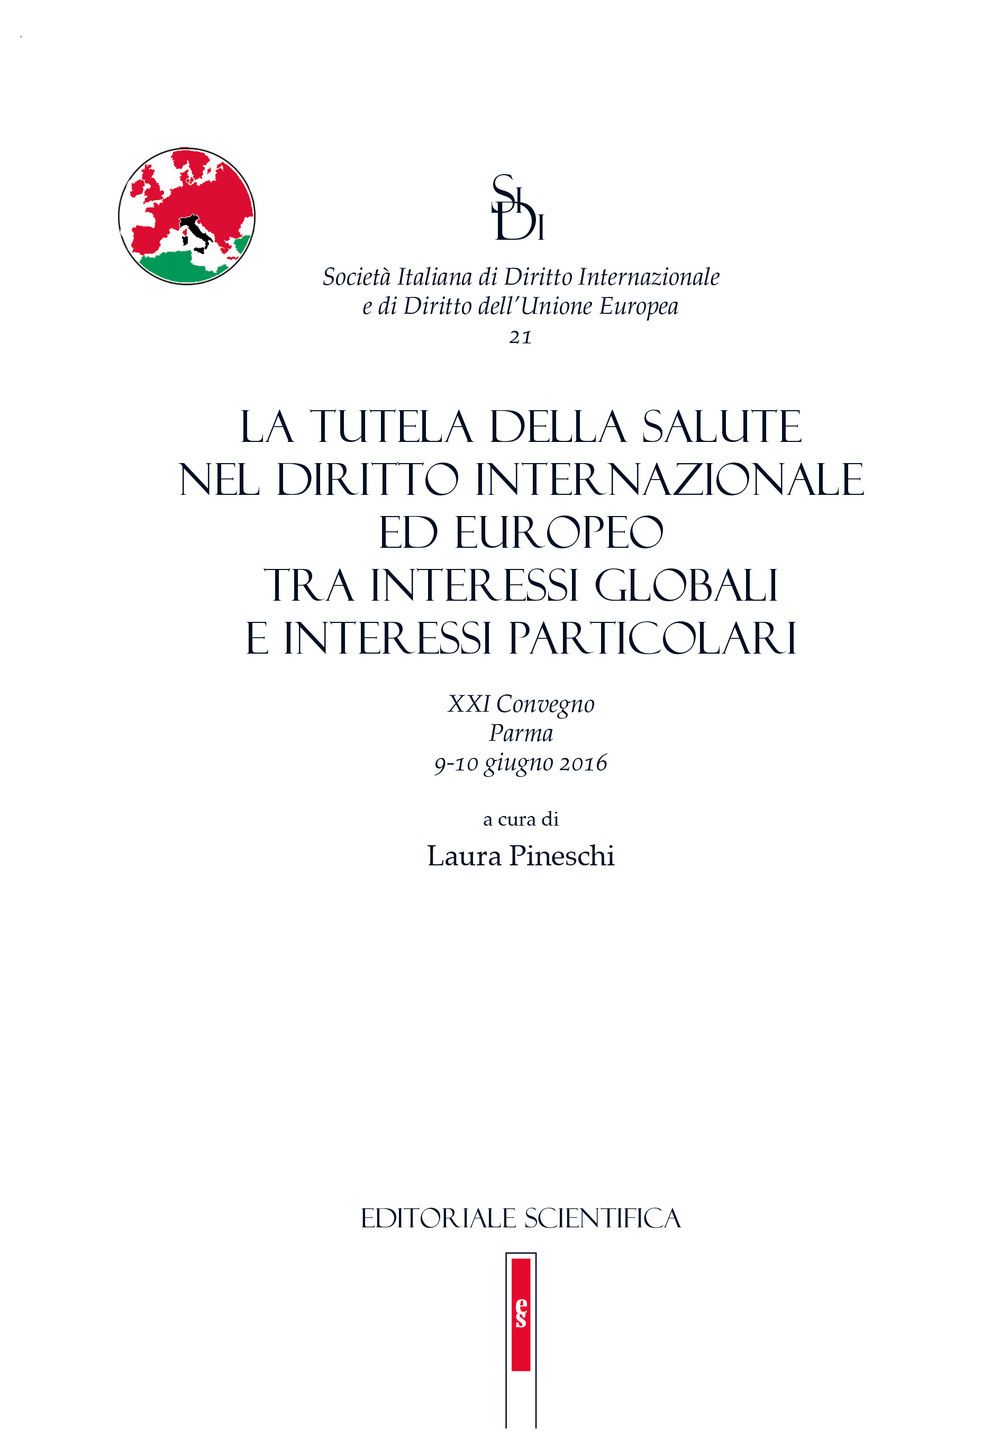 La tutela della salute nel diritto internazionale ed europeo tra interessi globali e interessi particolari. 21° convegno (Parma, 9-10 giugno 2016)